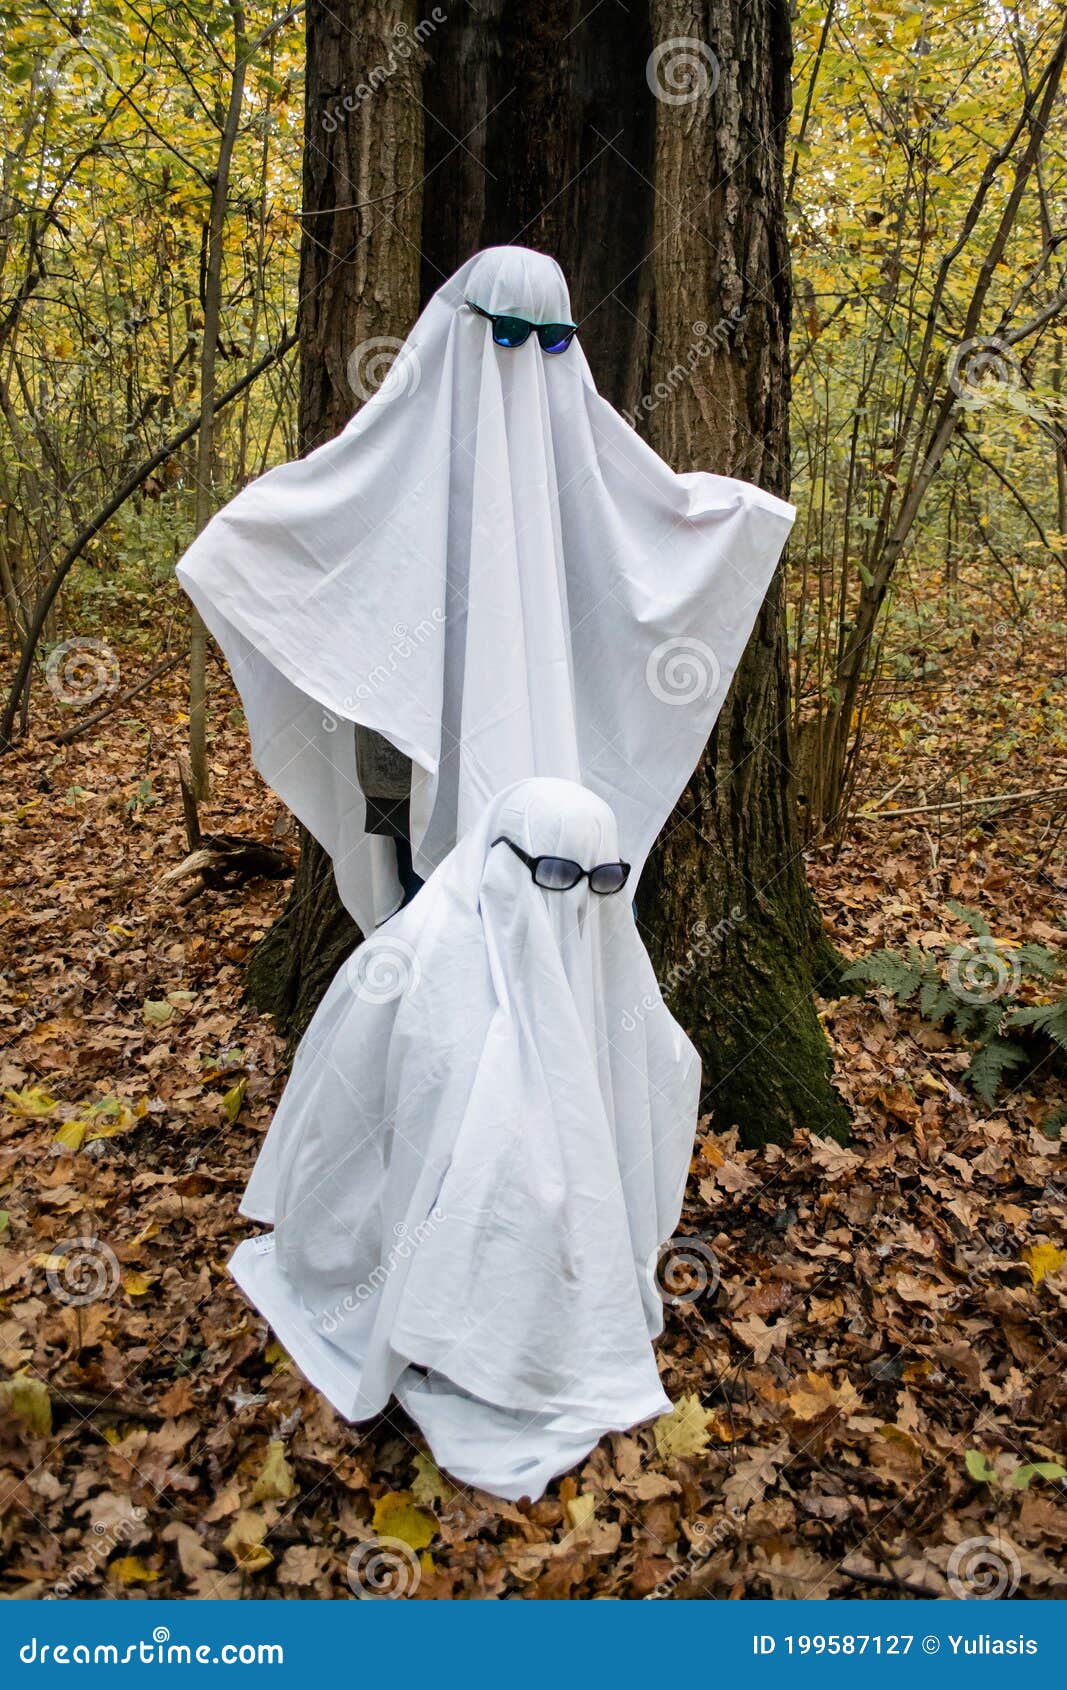 Academia Exactitud Inactivo Desafío Fantasma En El Bosque O Parque. Dos Adolescentes Irreconocibles  Disfrazados De Fantasmas Con Sábanas Blancas Y Imagen de archivo - Imagen  de lindo, retro: 199587127